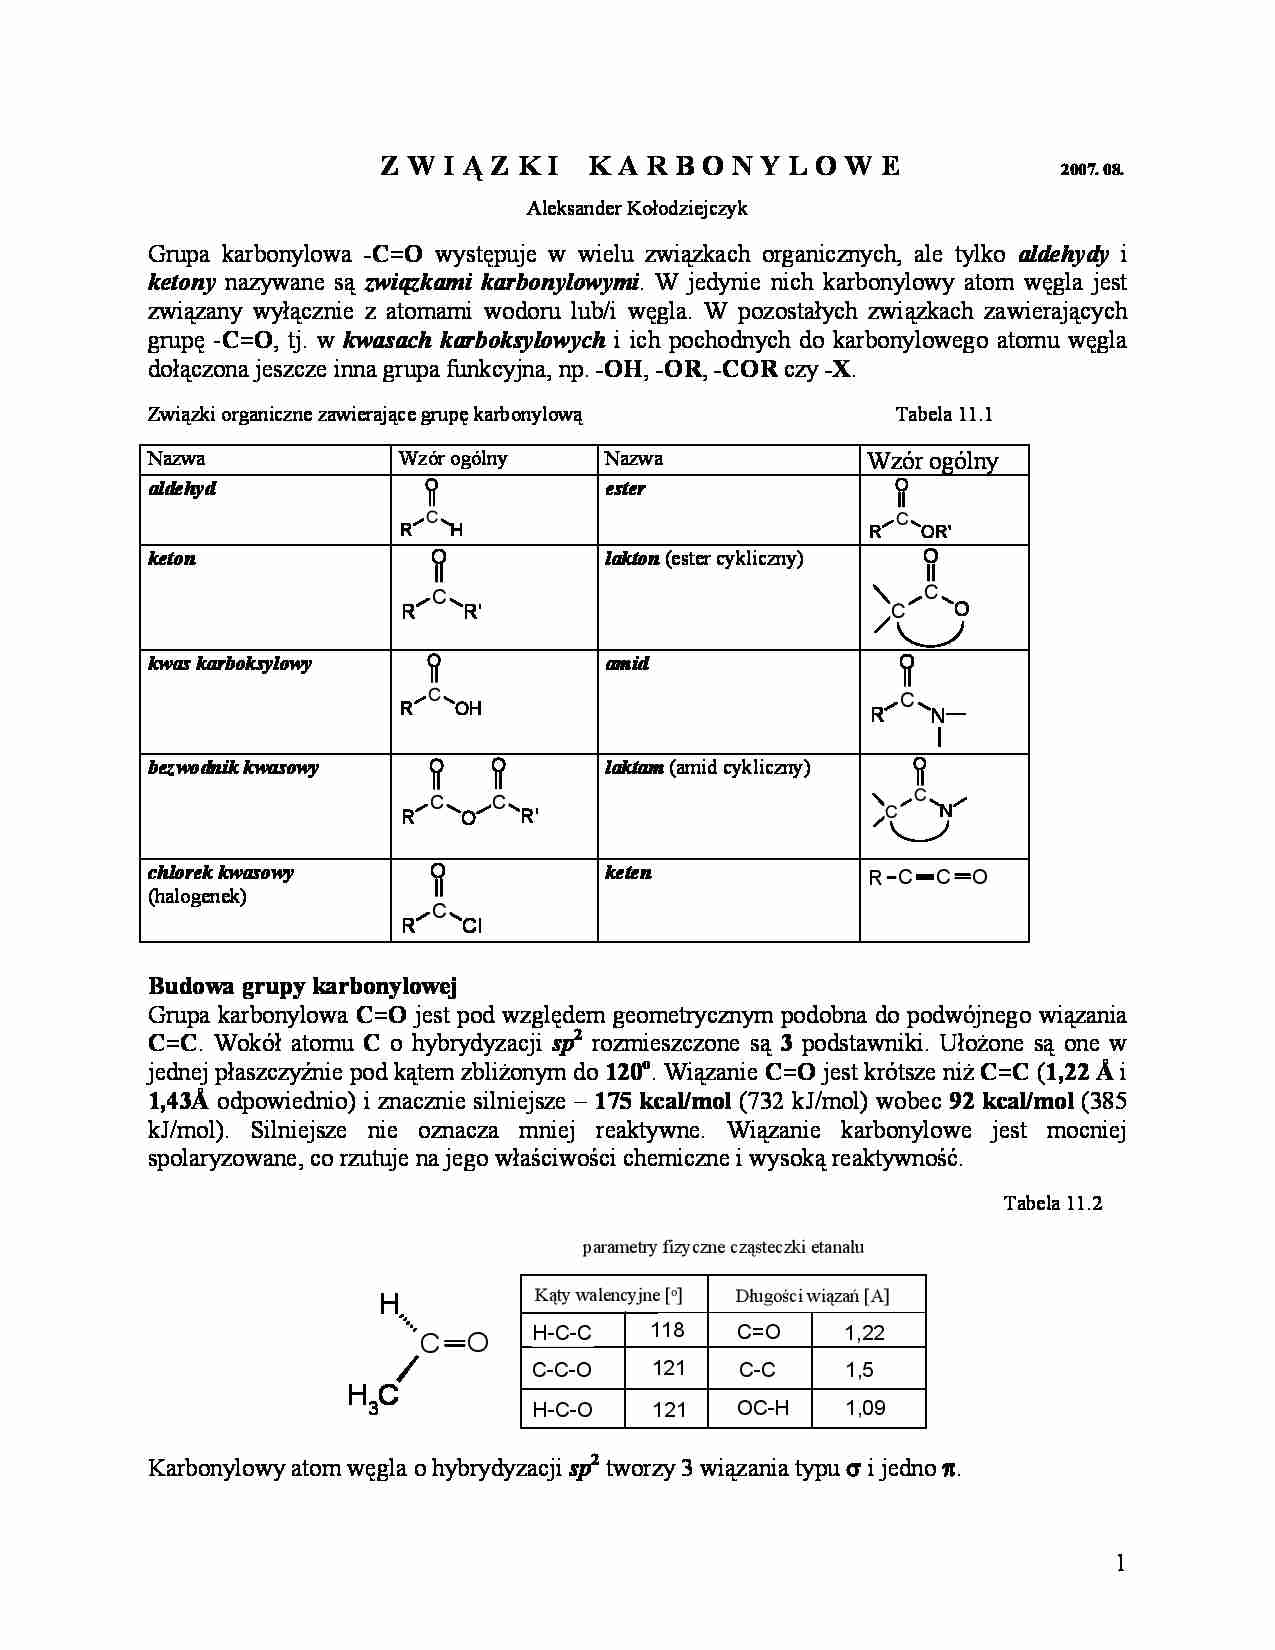 Związki karbonylowe - omówienie  - strona 1